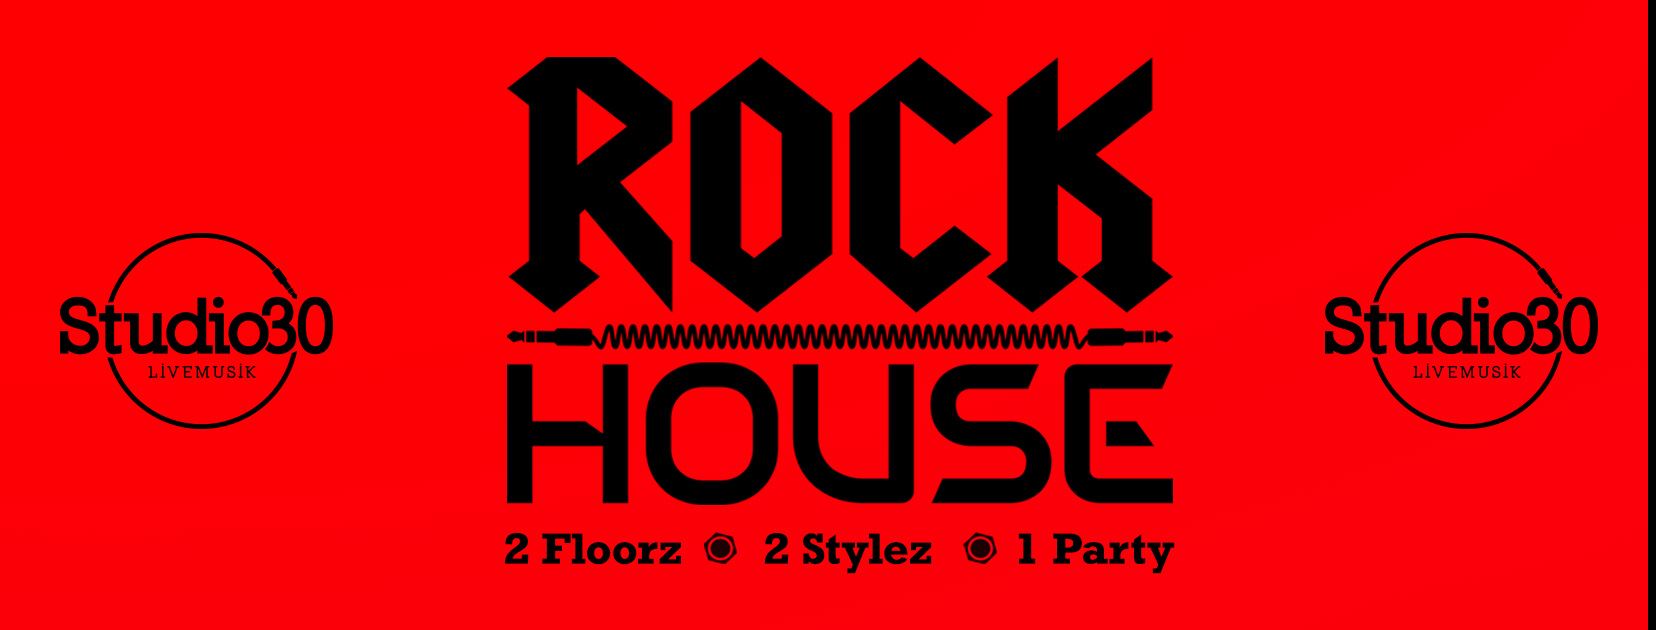 rockhouse banner logo